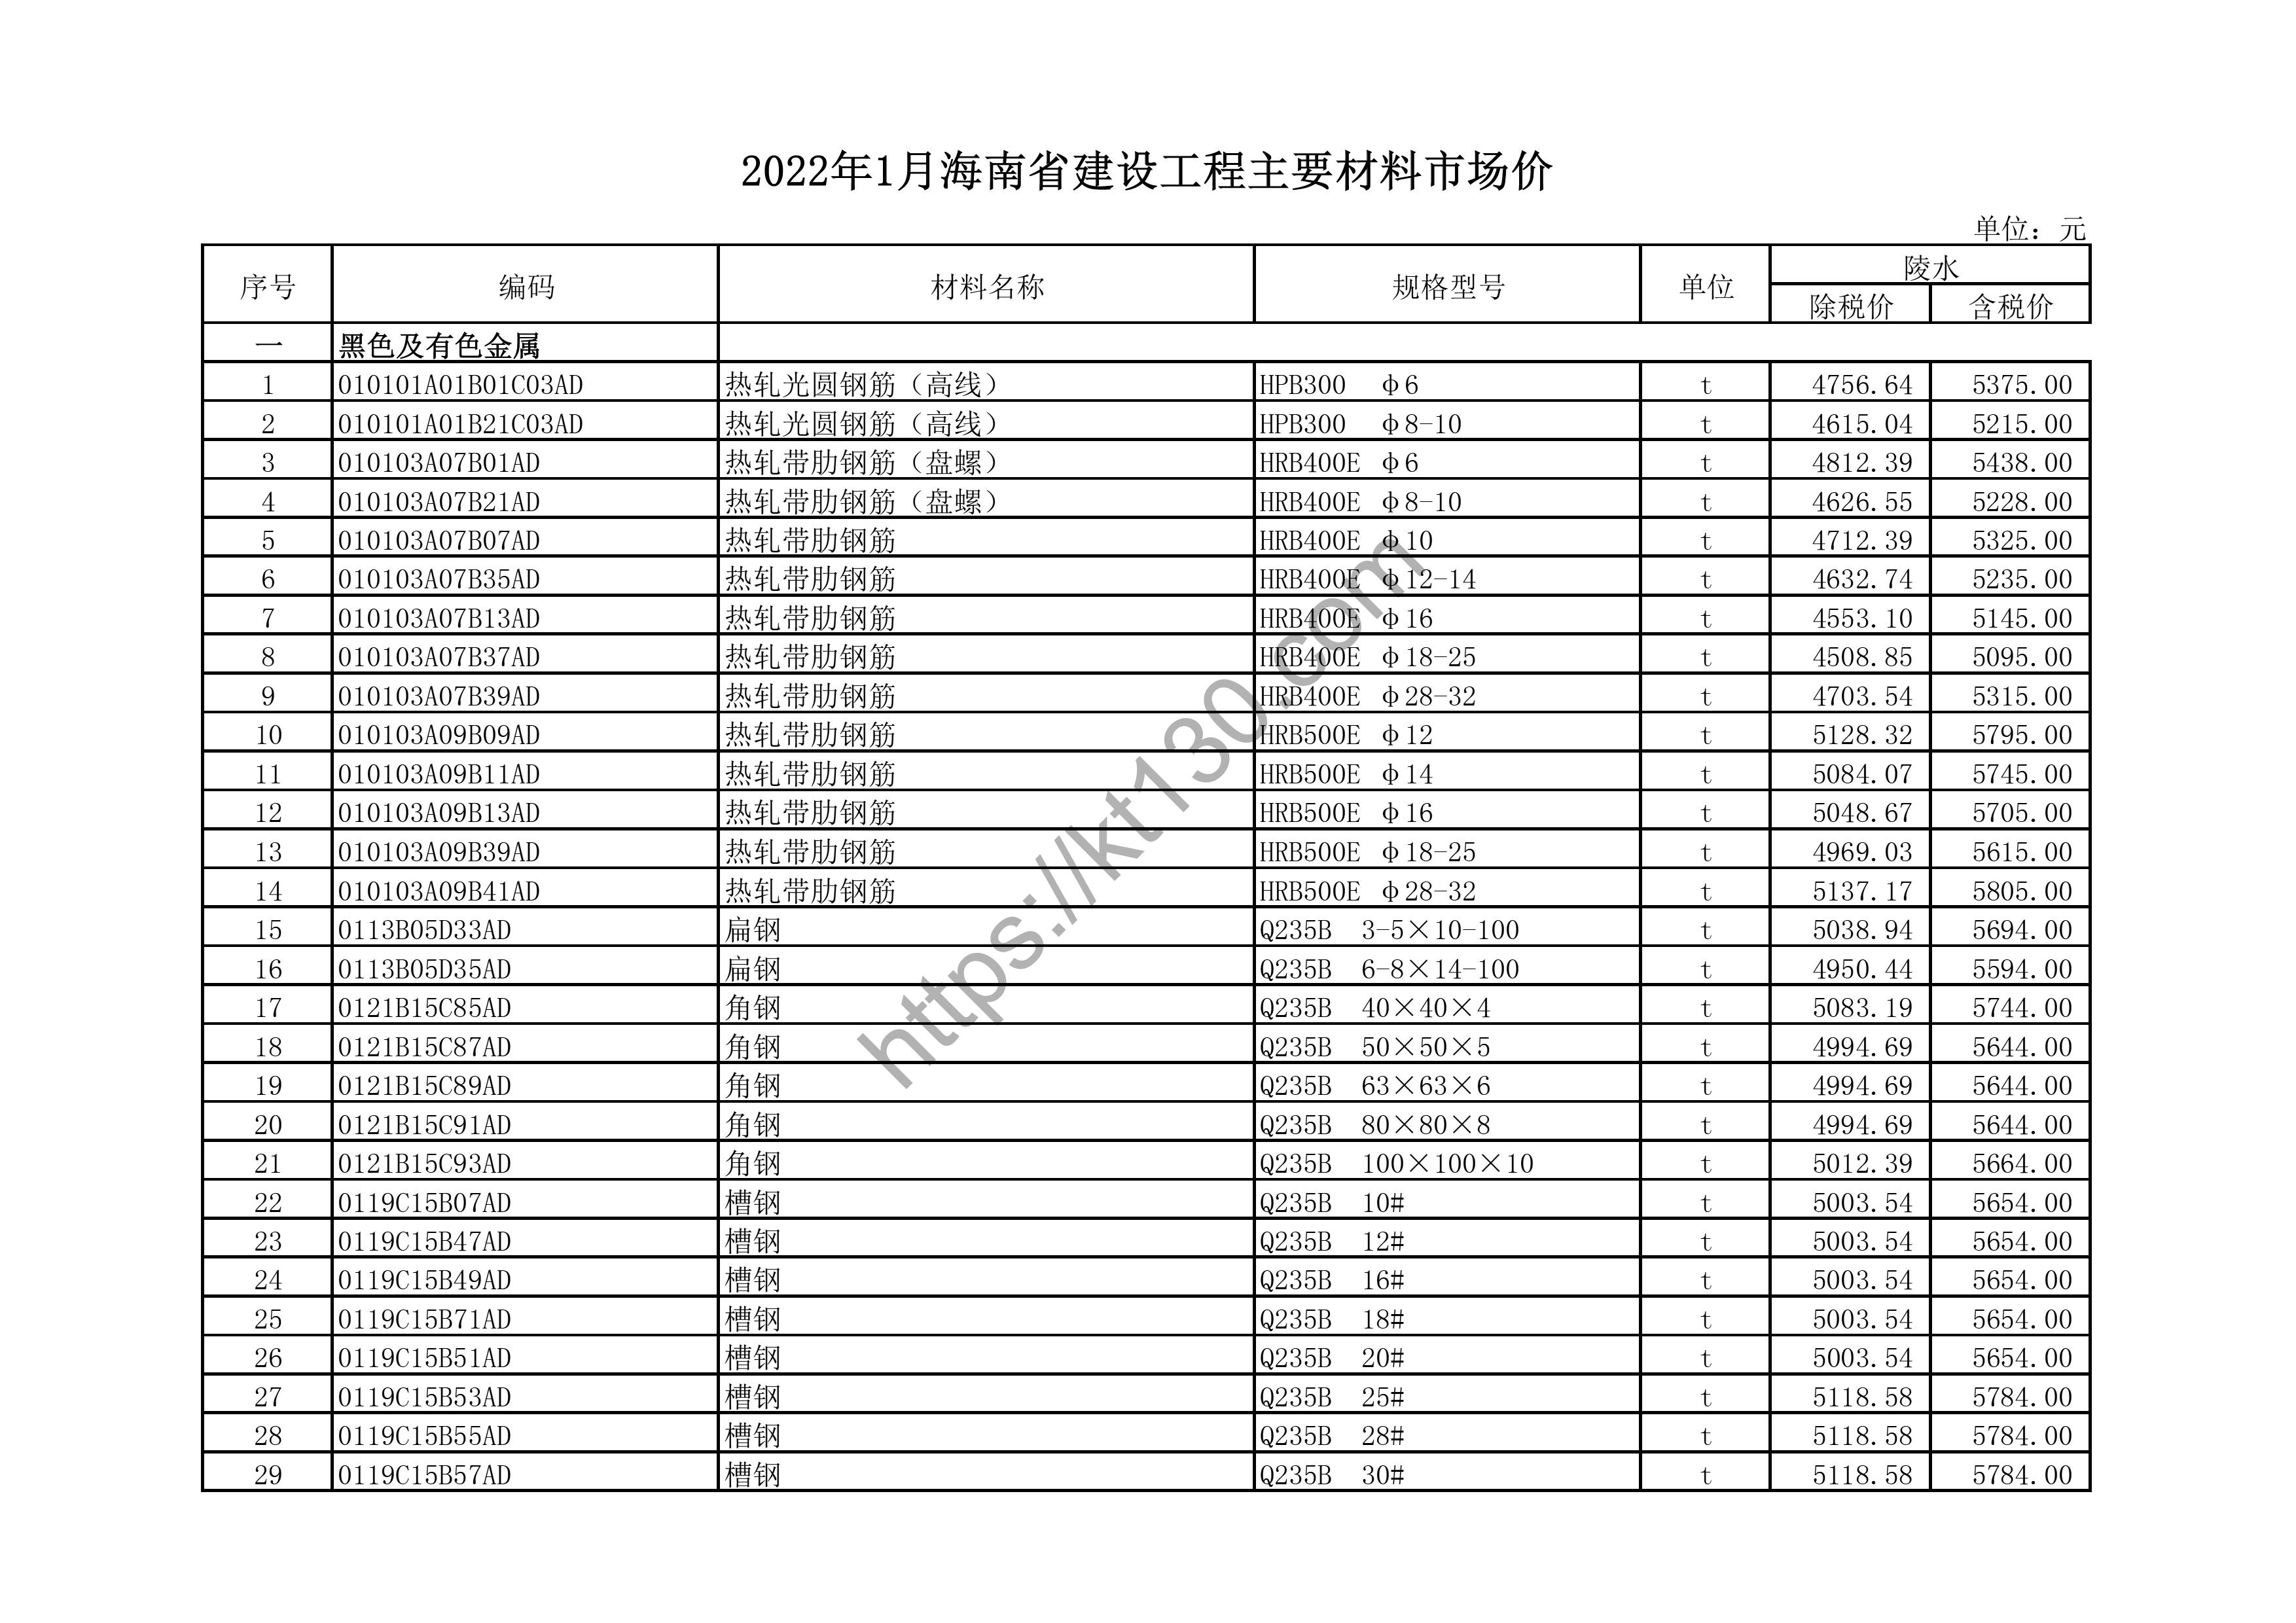 海南省2022年1月建筑材料价_带肋钢筋_43663